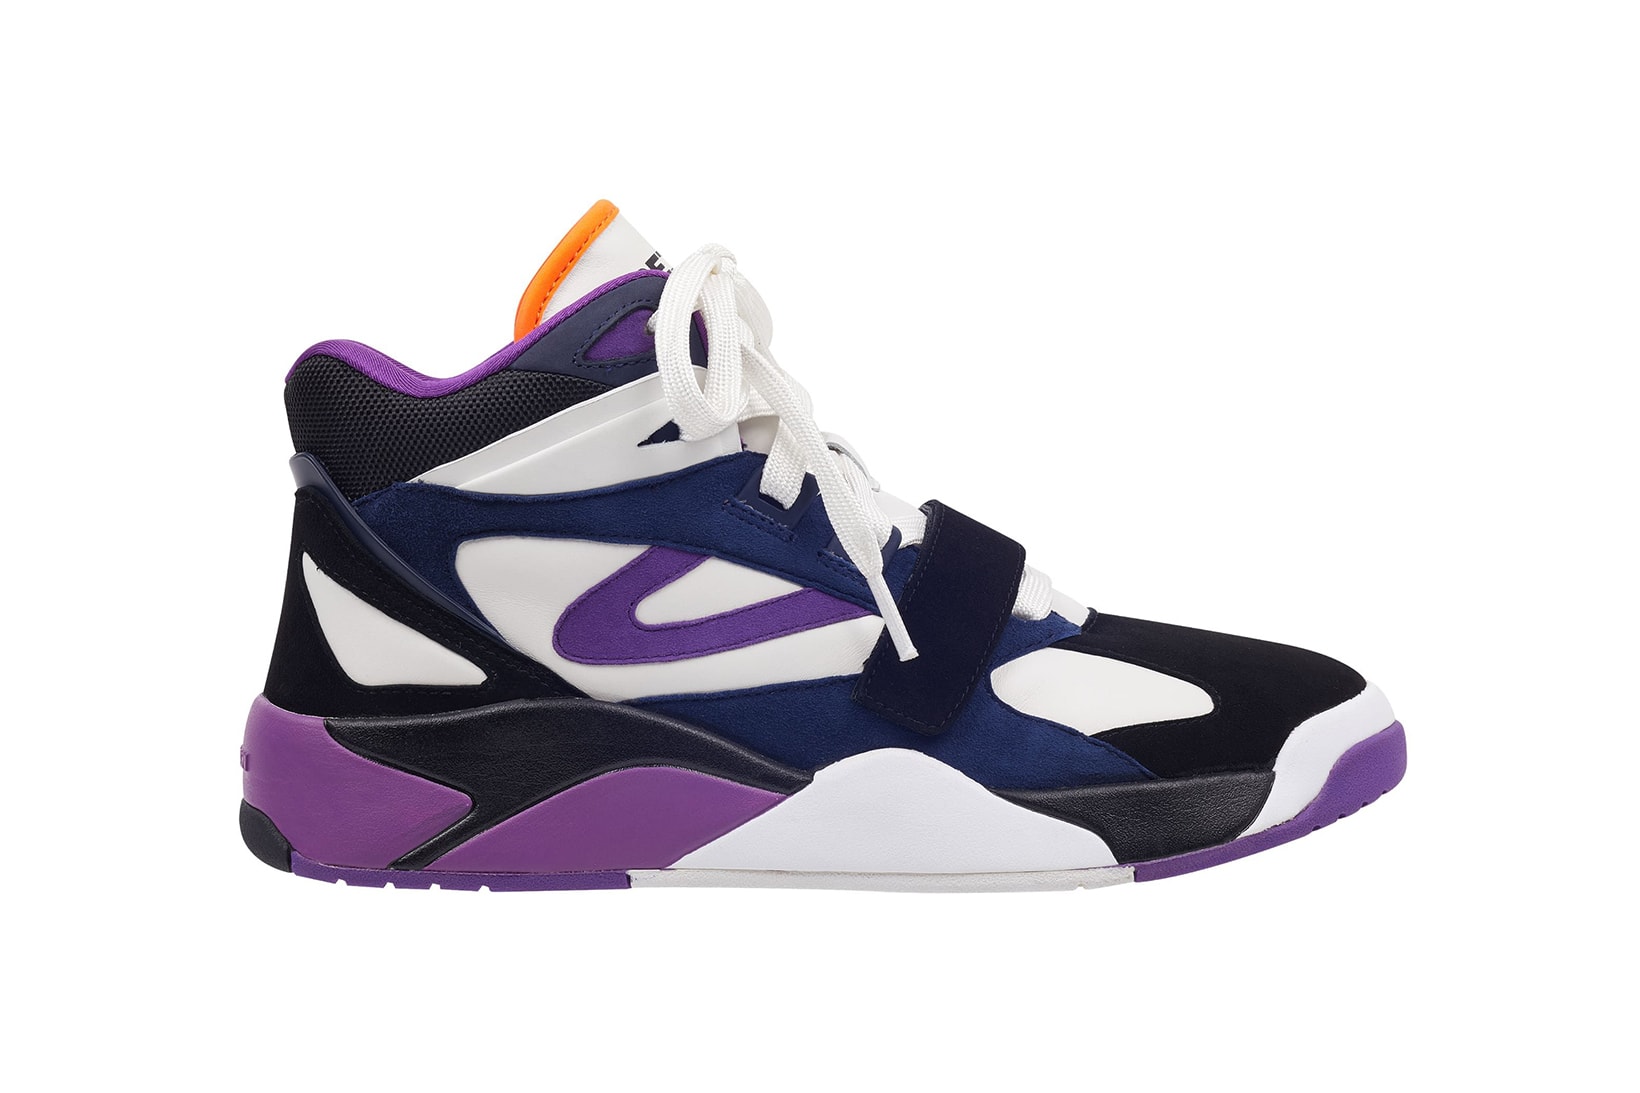 Andre 3000 Tretorn Bostad retro 80s style purple beige colorways 2018 february 1 release date info sneakers shoes footwear